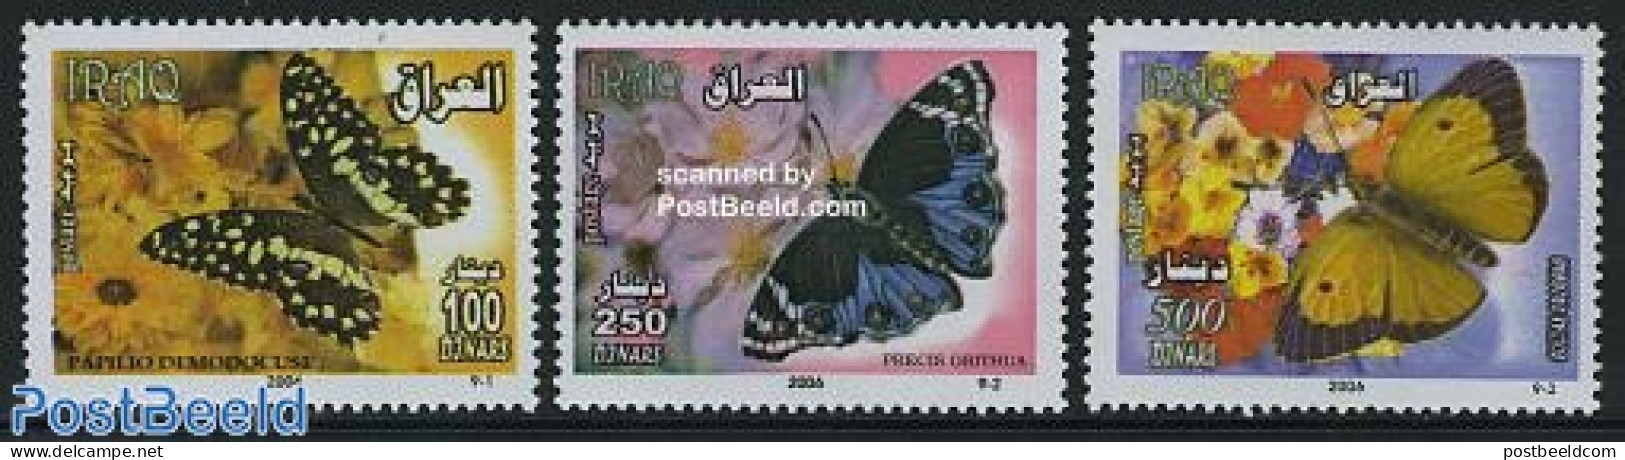 Iraq 2006 Butterflies 3v, Mint NH, Nature - Butterflies - Iraq